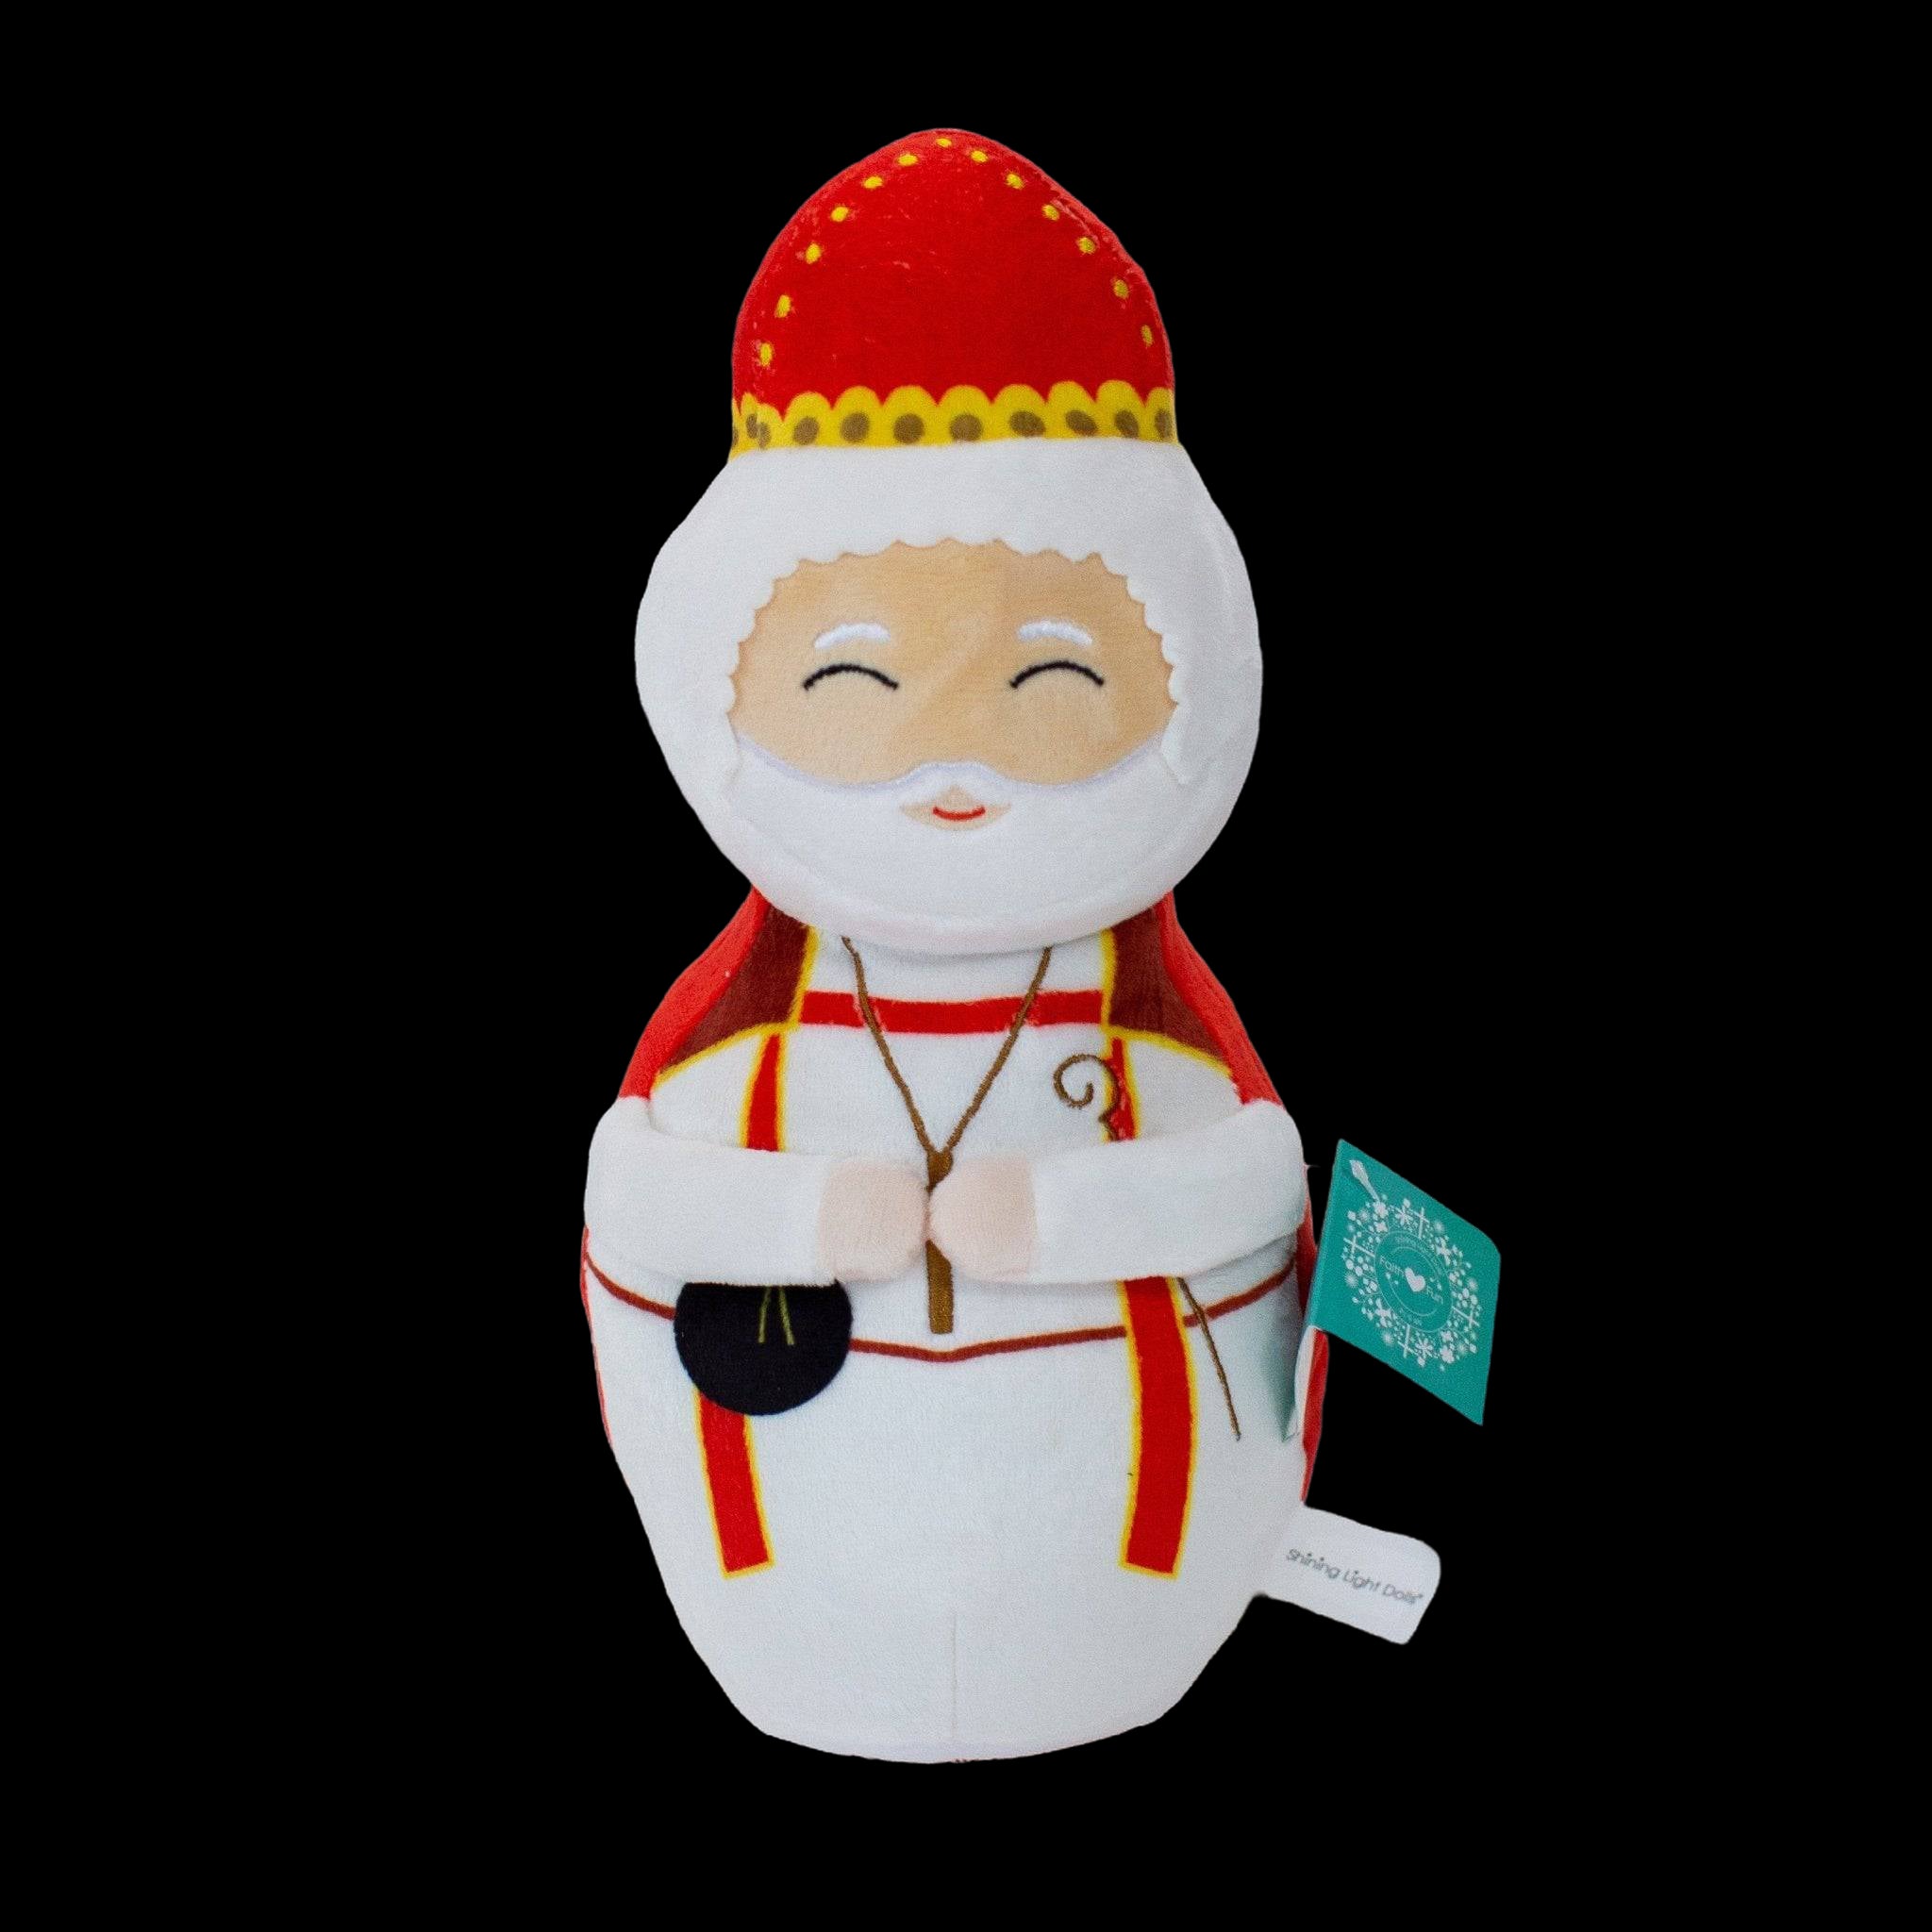 St. Nicholas Plush Doll